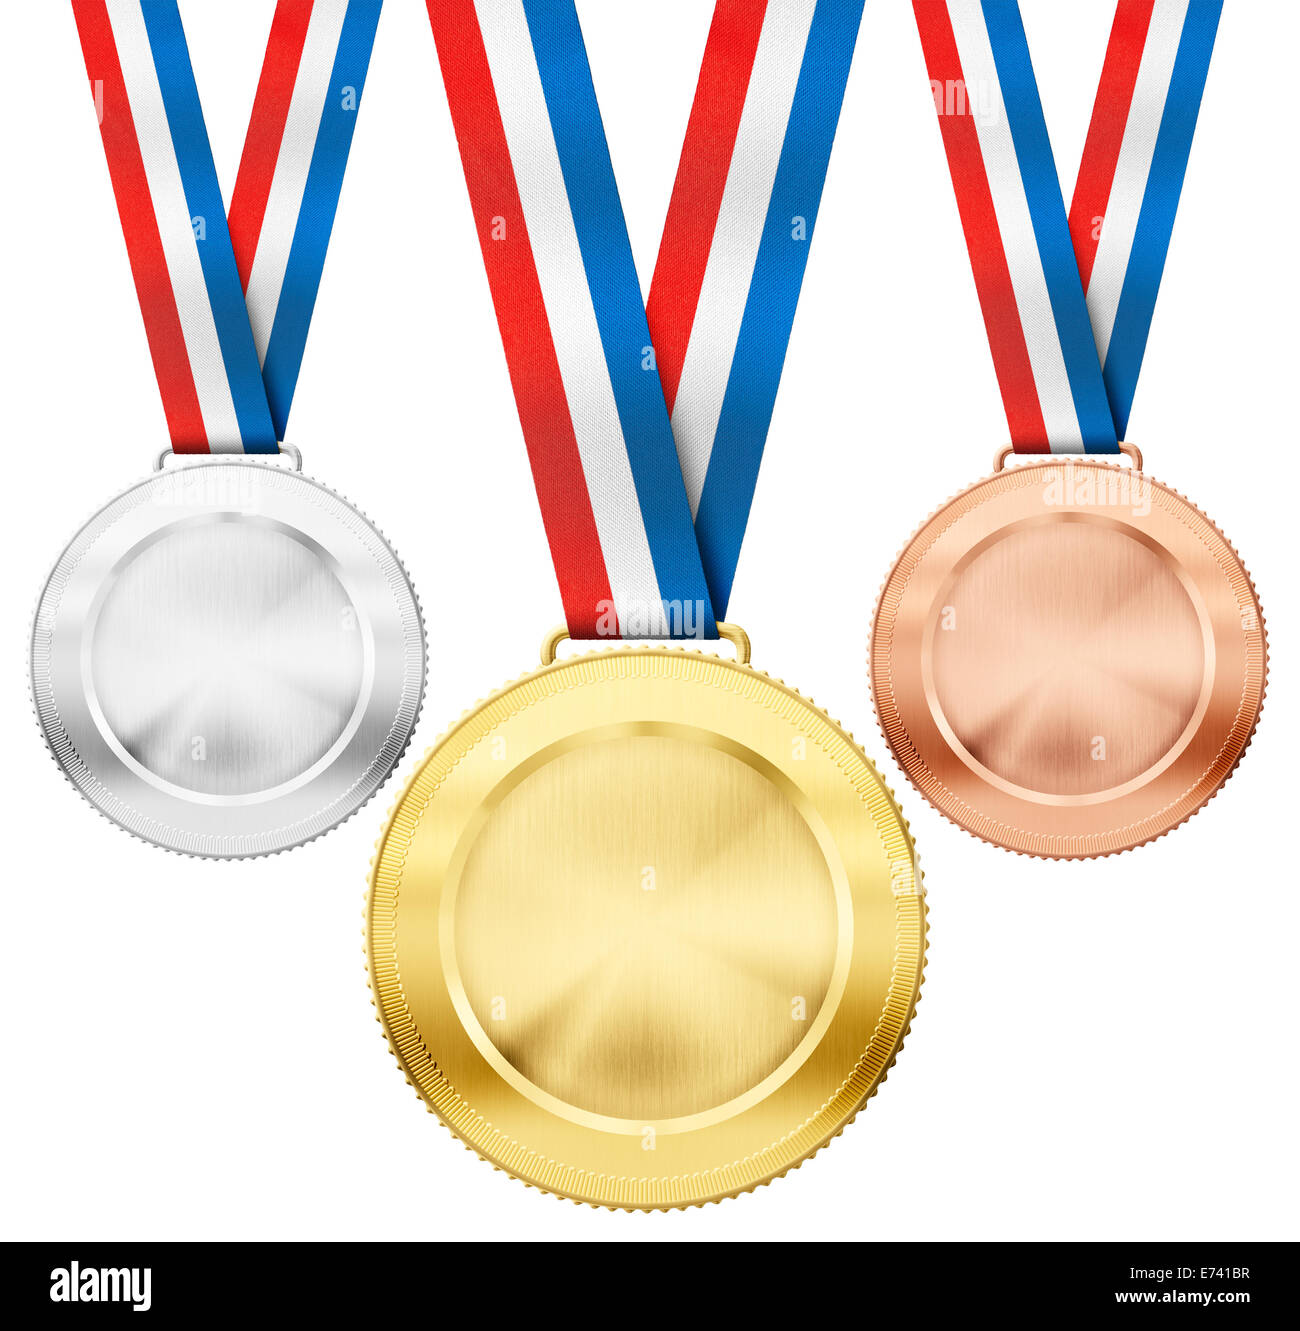 Oro, plata y bronce medallas deporte realista con moño tricolor conjunto aislado en blanco Foto de stock